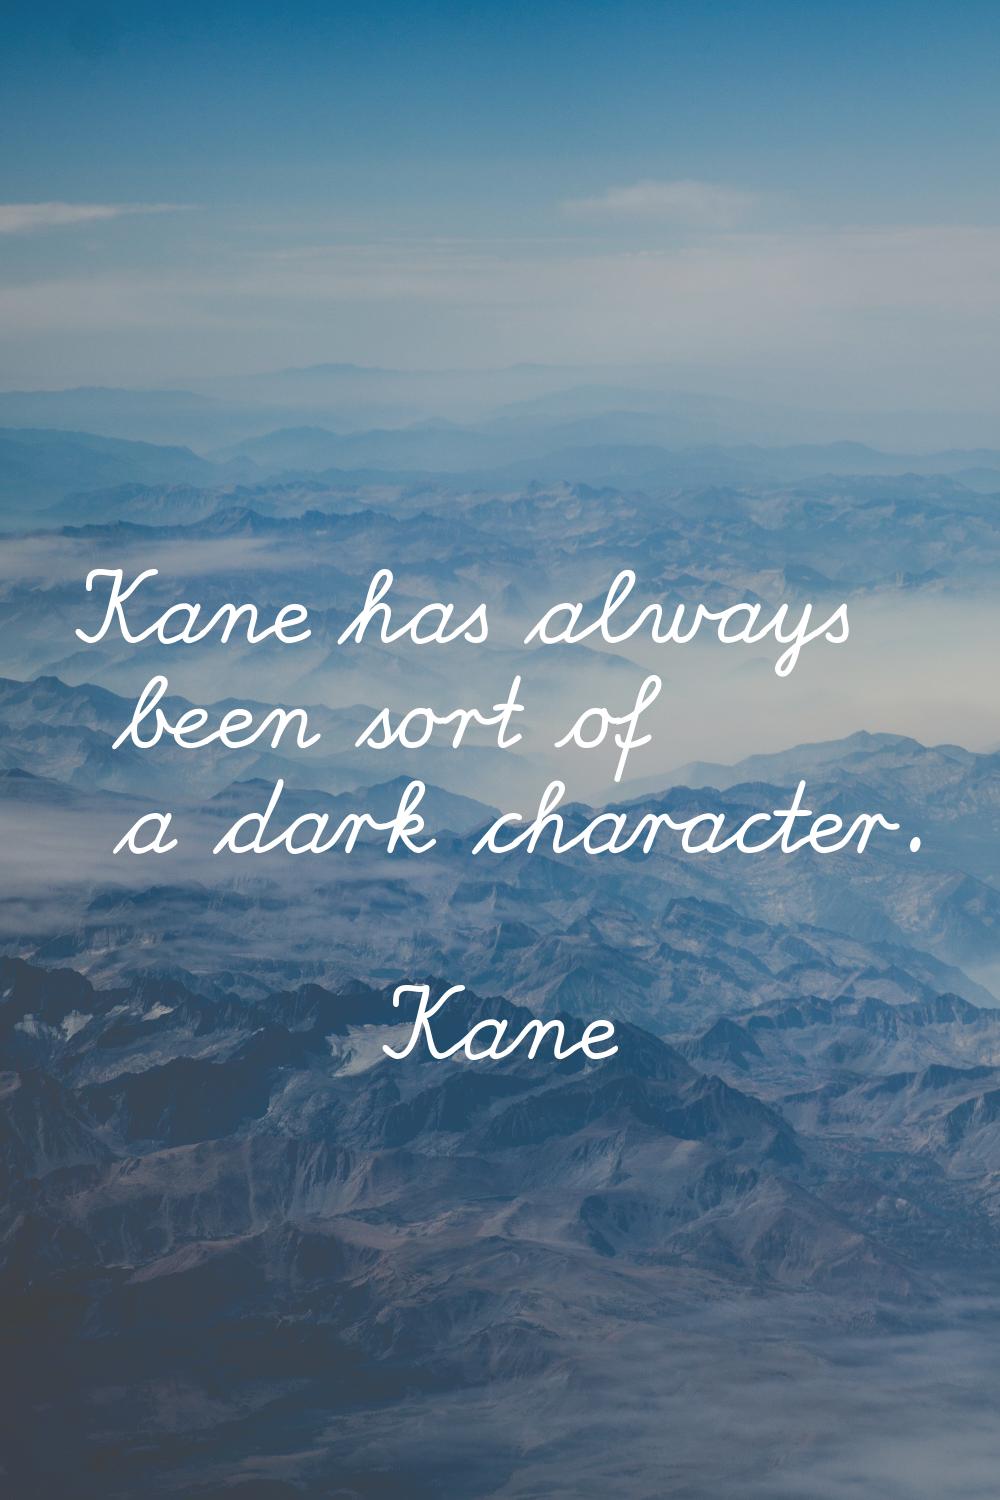 Kane has always been sort of a dark character.